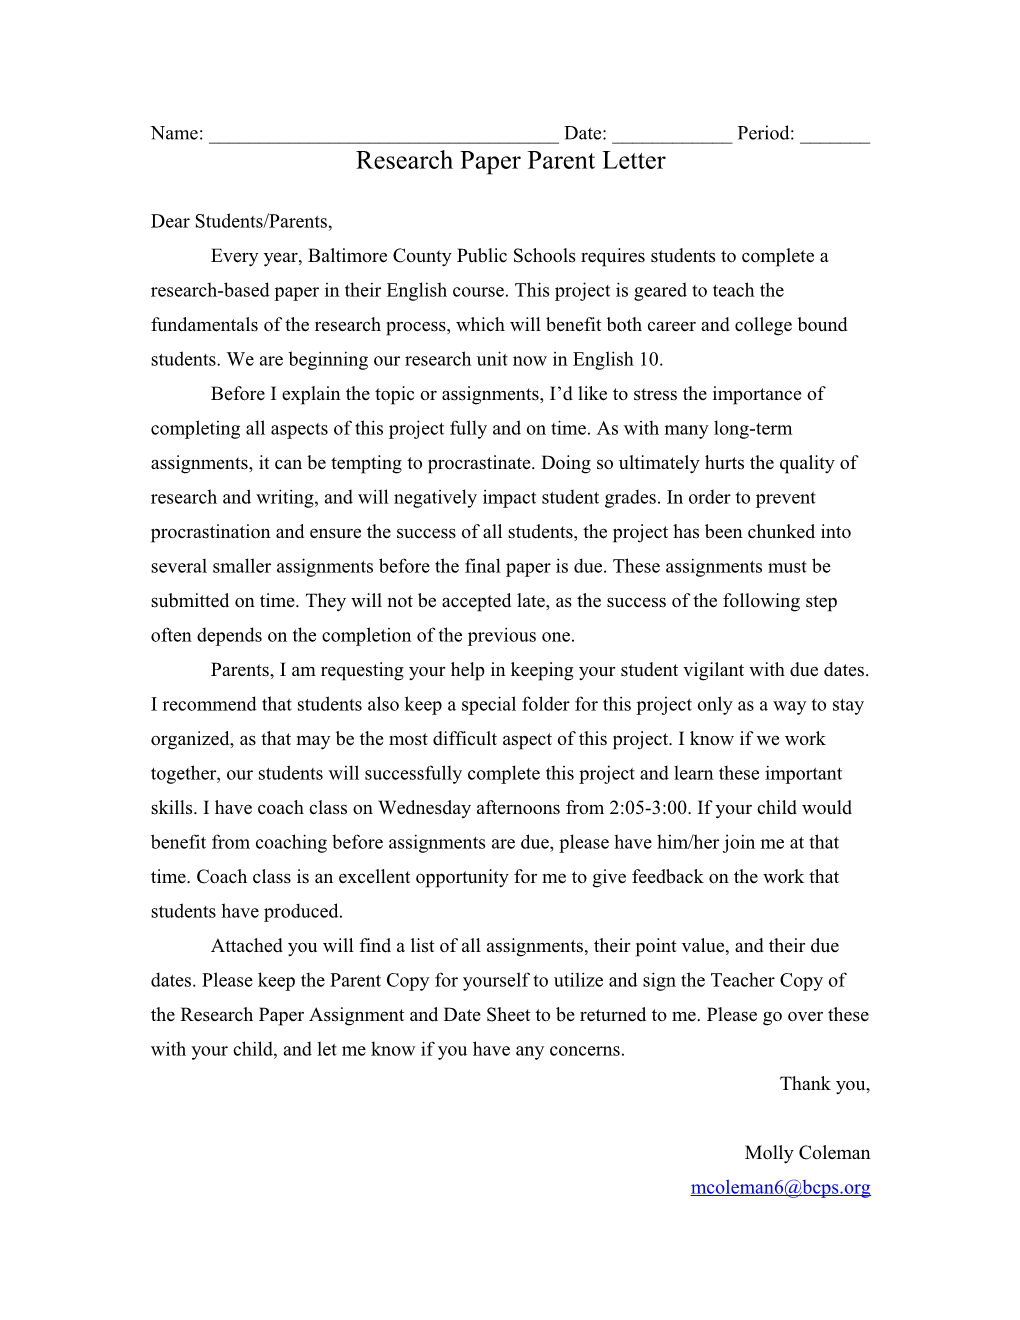 Research Paper Parent Letter